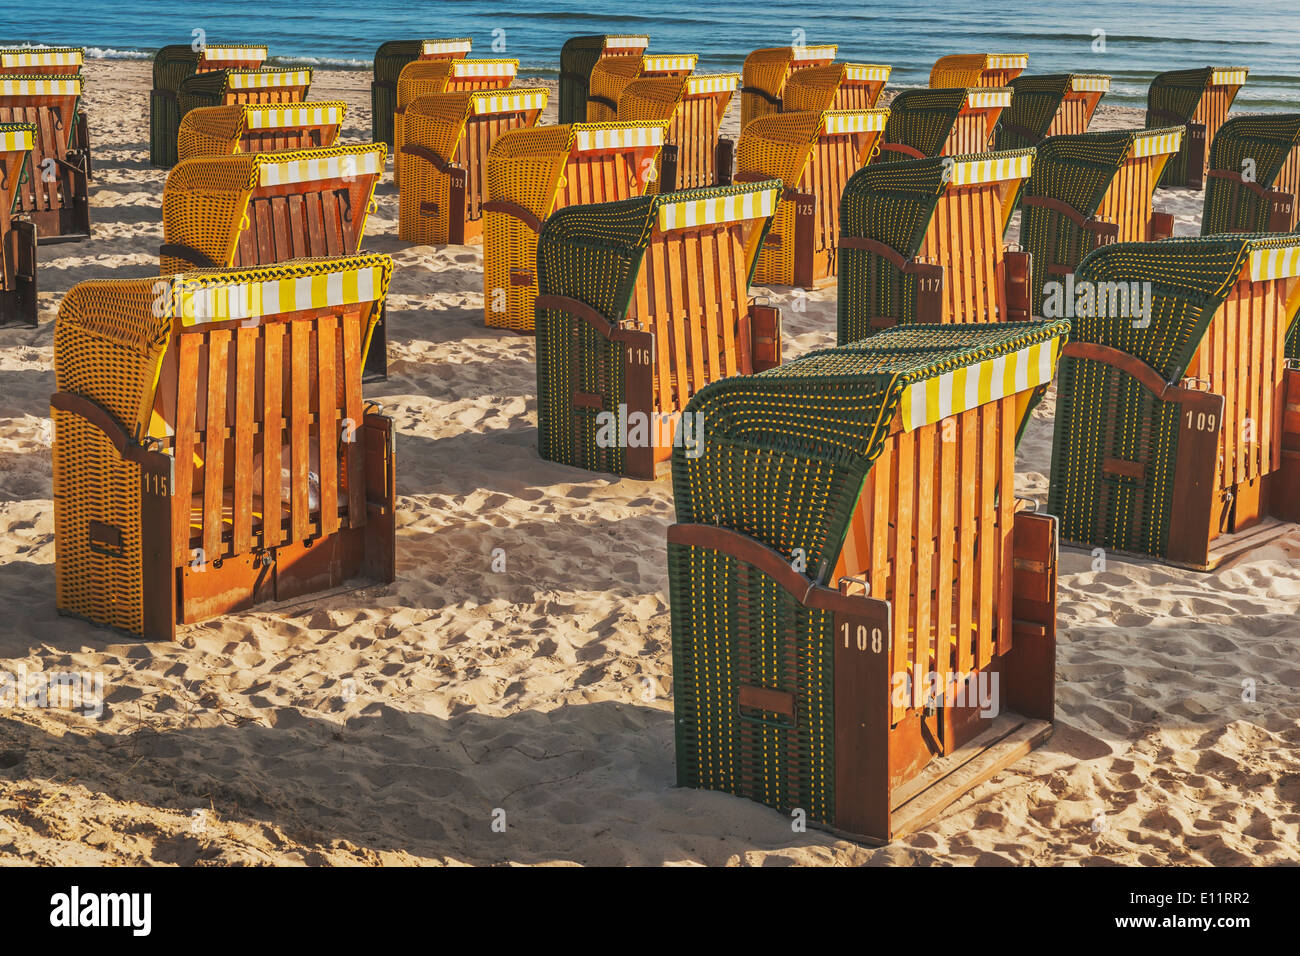 Liegestühle am Strand Ostsee, Ostsee resort Binz, Insel Rügen, Mecklenburg-Western Pomerania, Deutschland, Europa Stockfoto